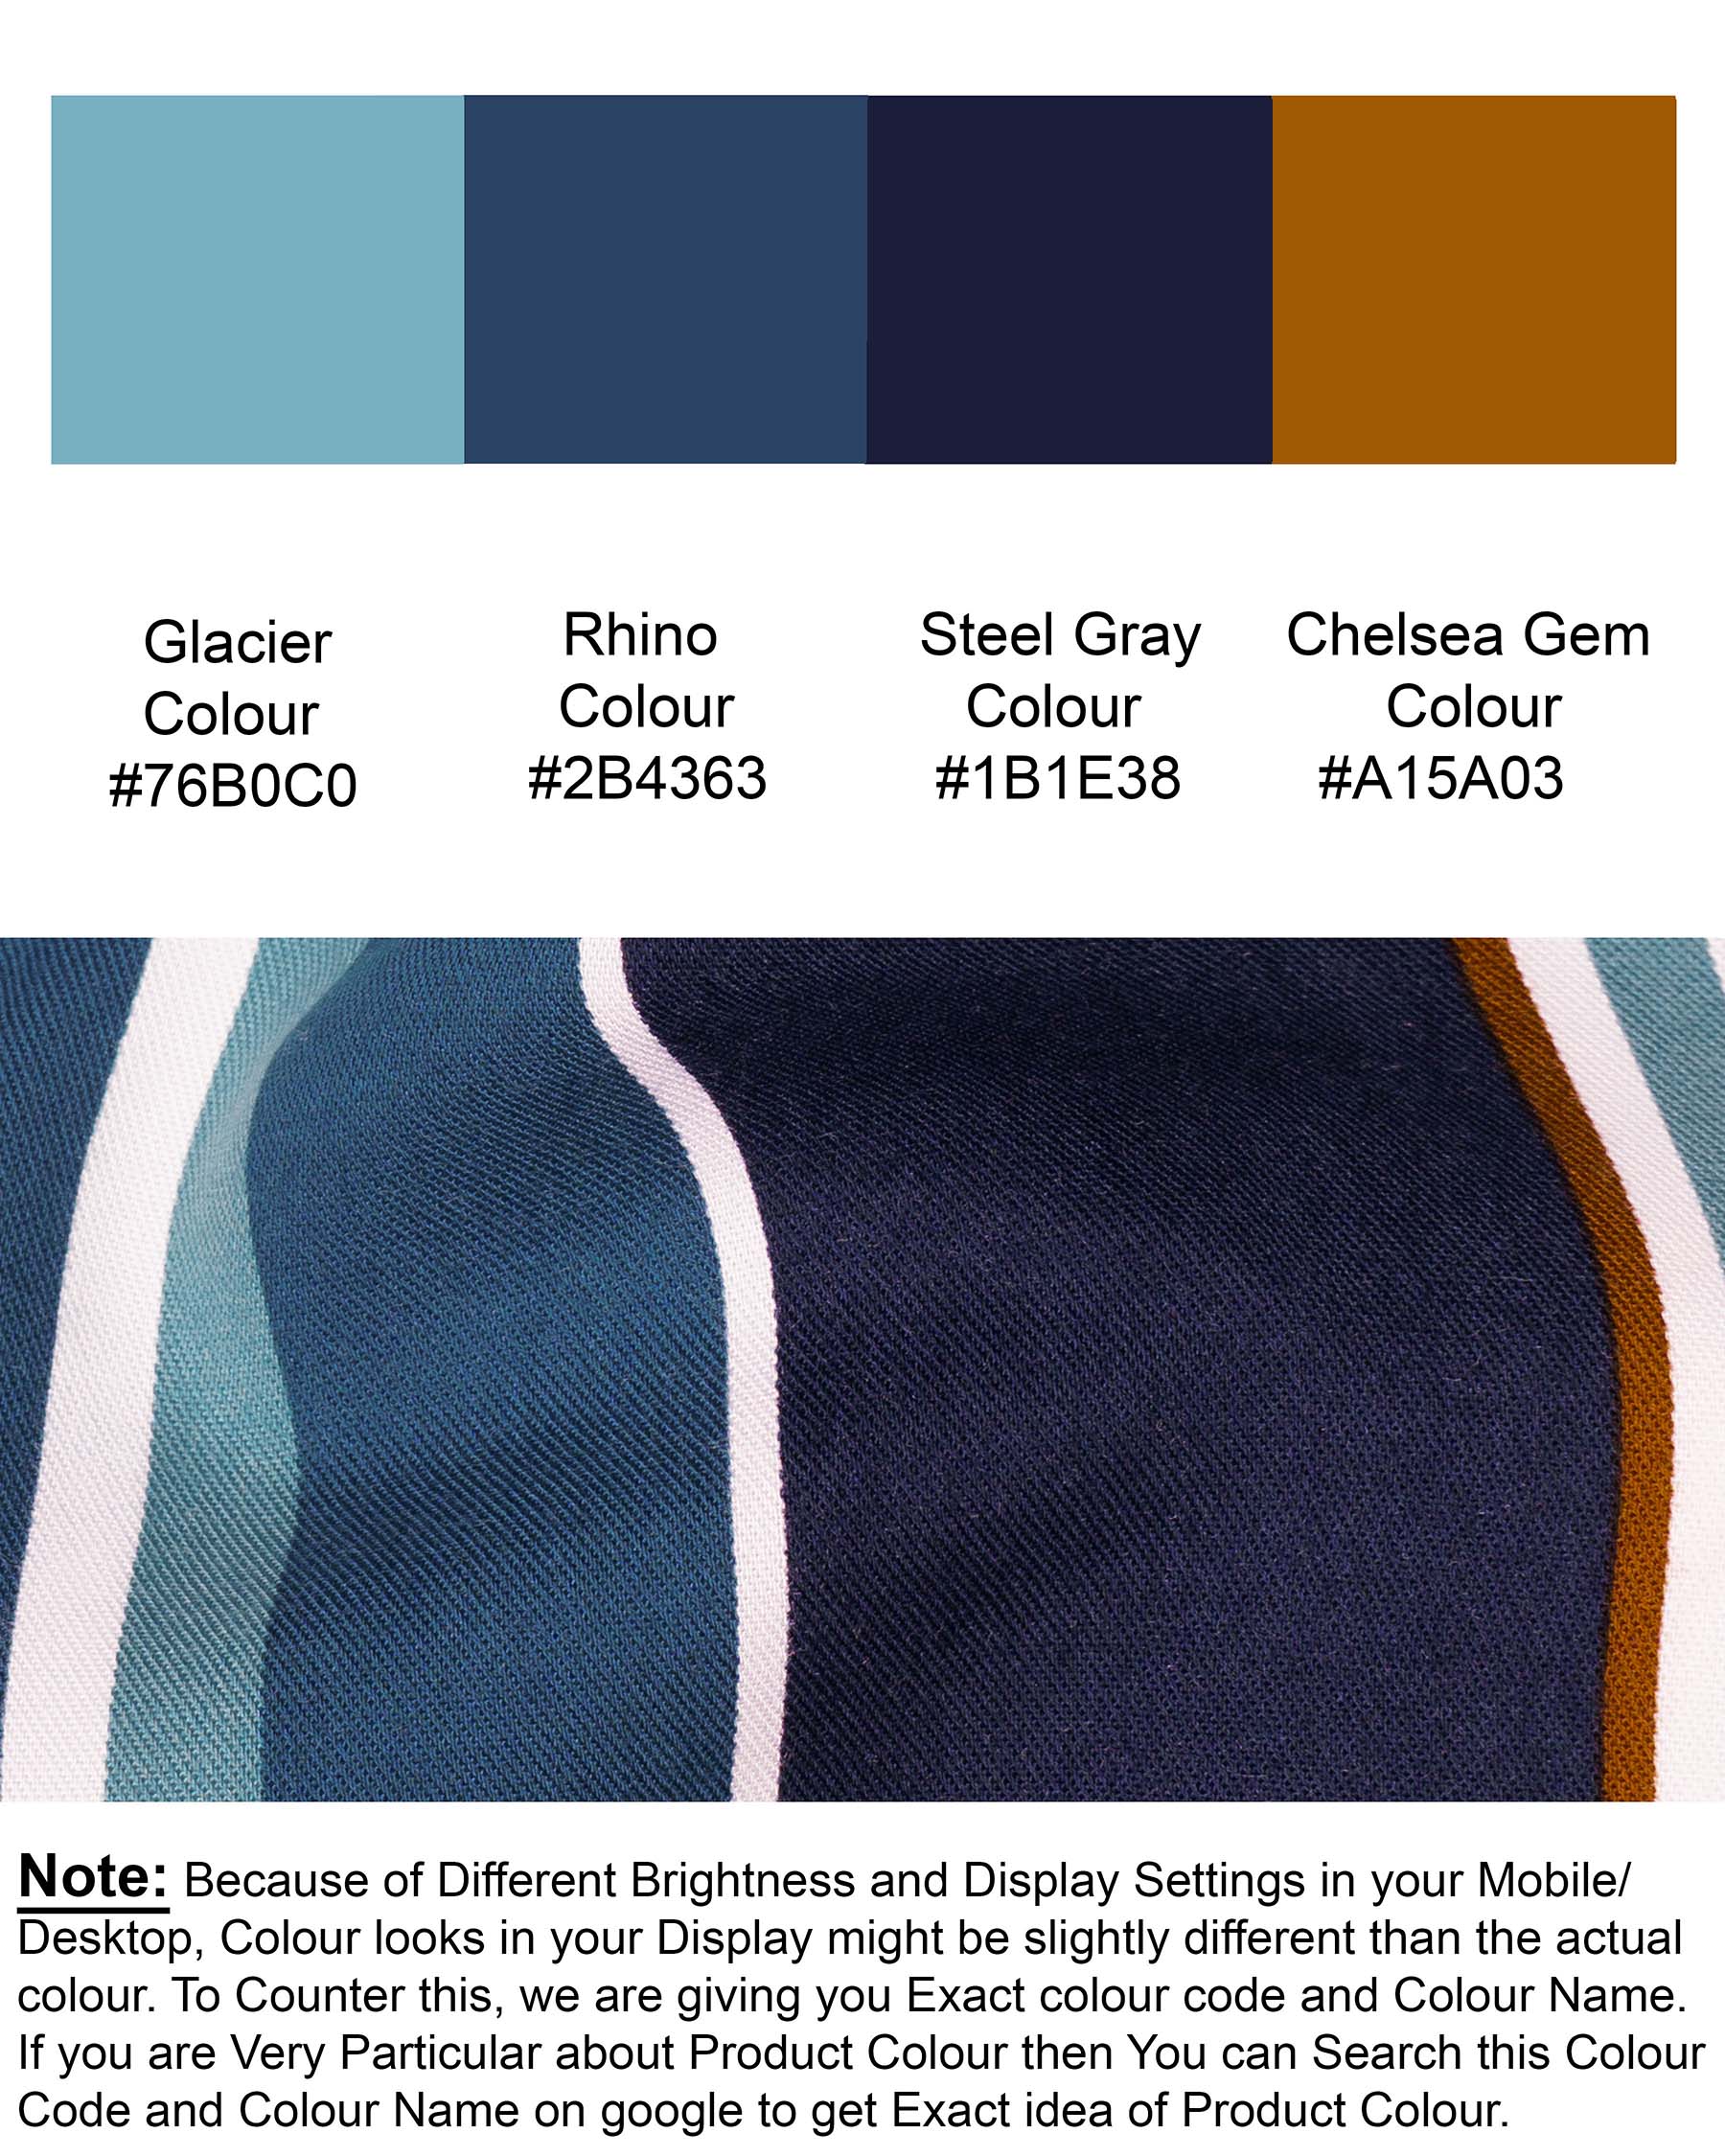 Glacier Blue and Steel Gray Striped Premium Tencel Shirt 6141-BD-38, 6141-BD-H-38, 6141-BD-39, 6141-BD-H-39, 6141-BD-40, 6141-BD-H-40, 6141-BD-42, 6141-BD-H-42, 6141-BD-44, 6141-BD-H-44, 6141-BD-46, 6141-BD-H-46, 6141-BD-48, 6141-BD-H-48, 6141-BD-50, 6141-BD-H-50, 6141-BD-52, 6141-BD-H-52